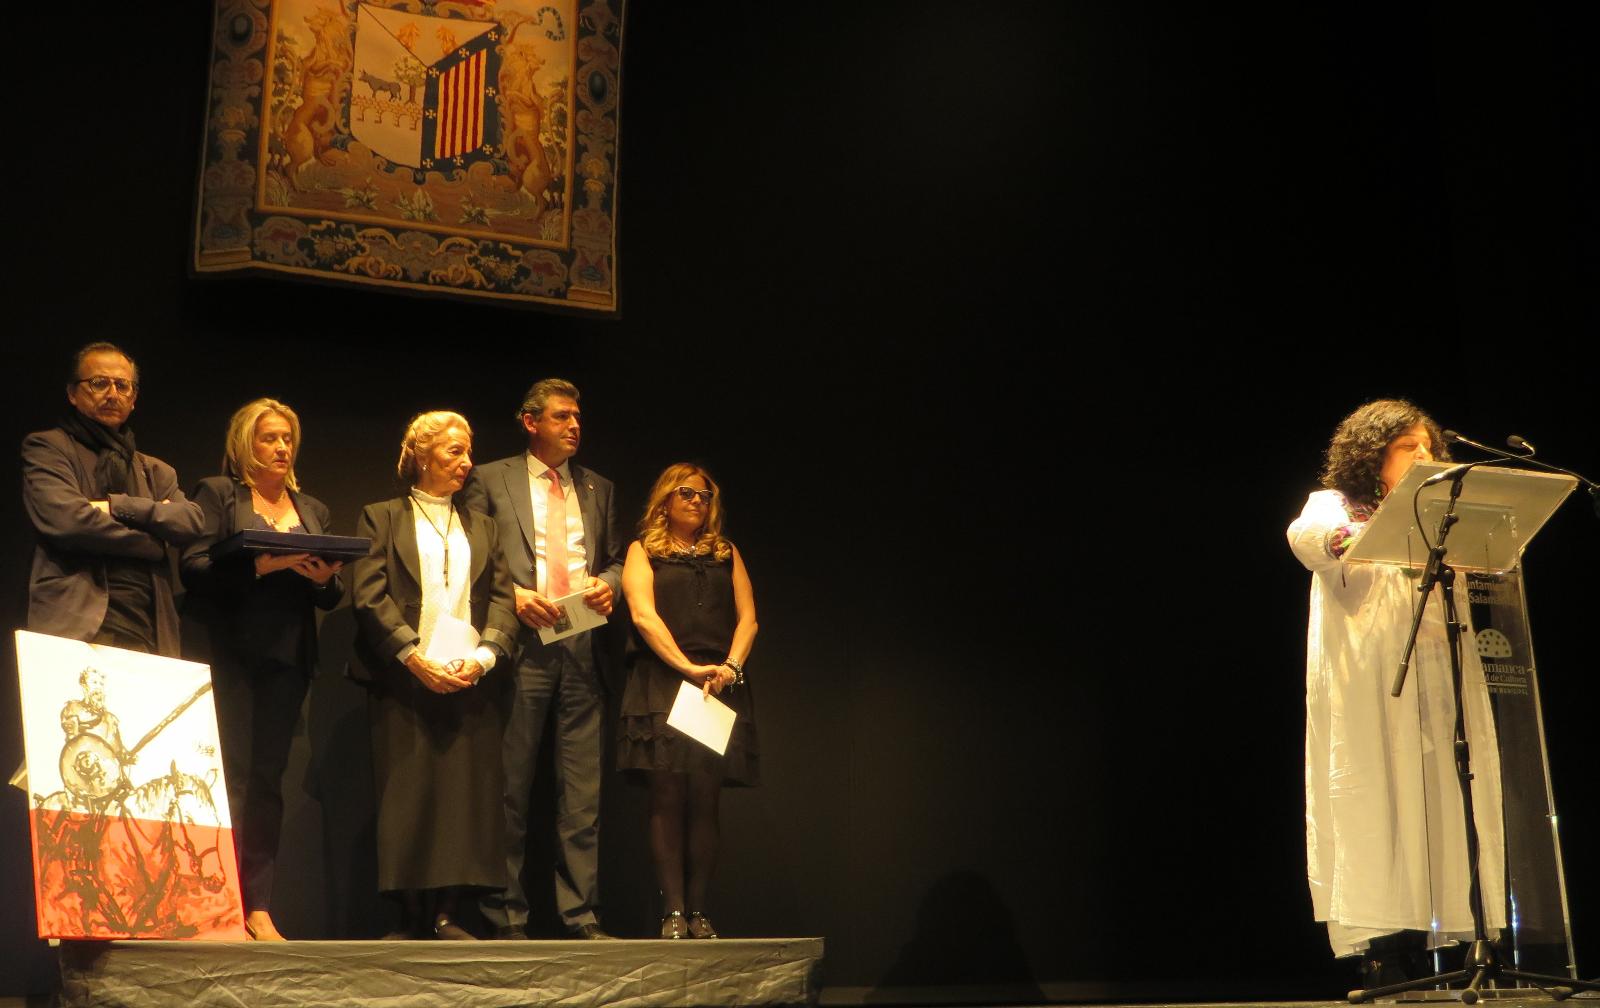 Foto 5 - La boliviana Paura Rodríguez Leytón recibe el Accésit del IV Premio Internacional de Poesía...